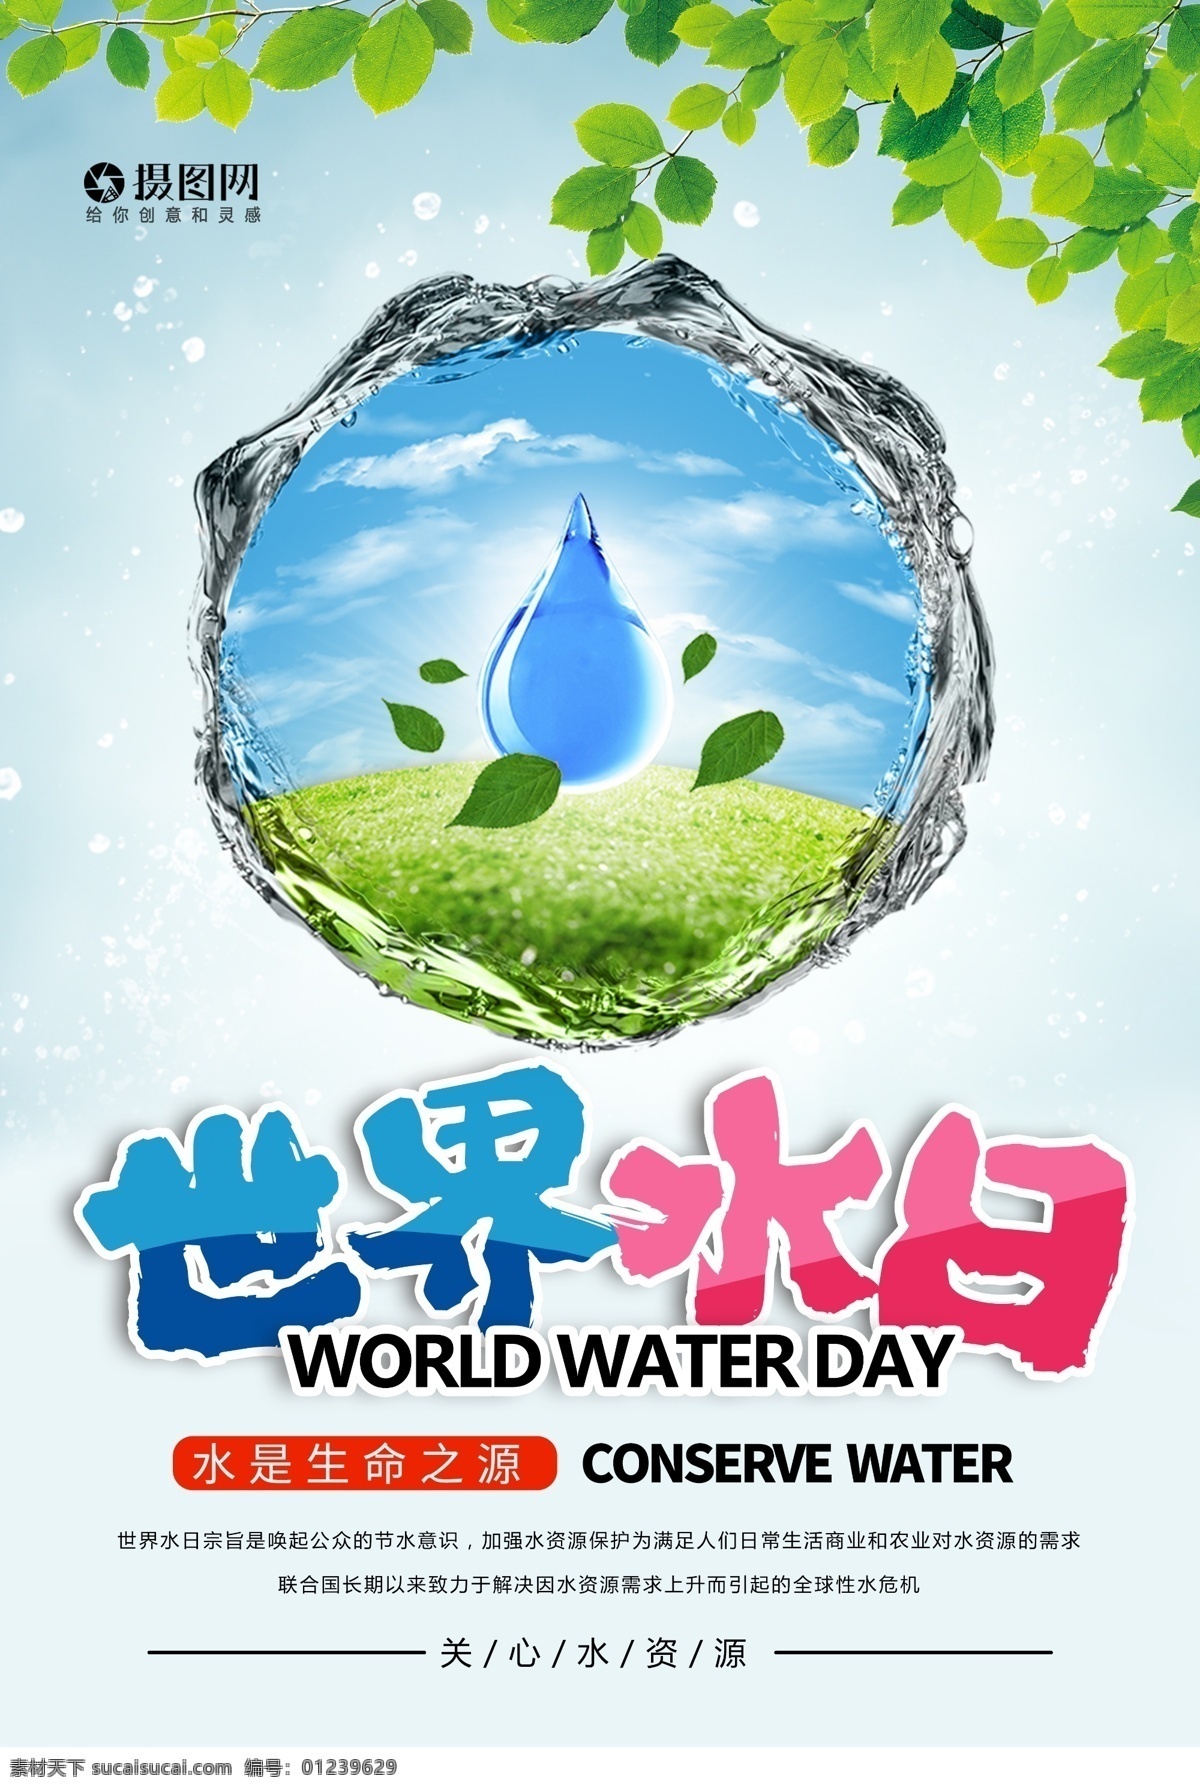 保护 水资源 世界 水日 海报 保护水资 源世界水日 节约用水 公益 公益海报 资源 世界水日 保护水资源 水资源海报 宣传